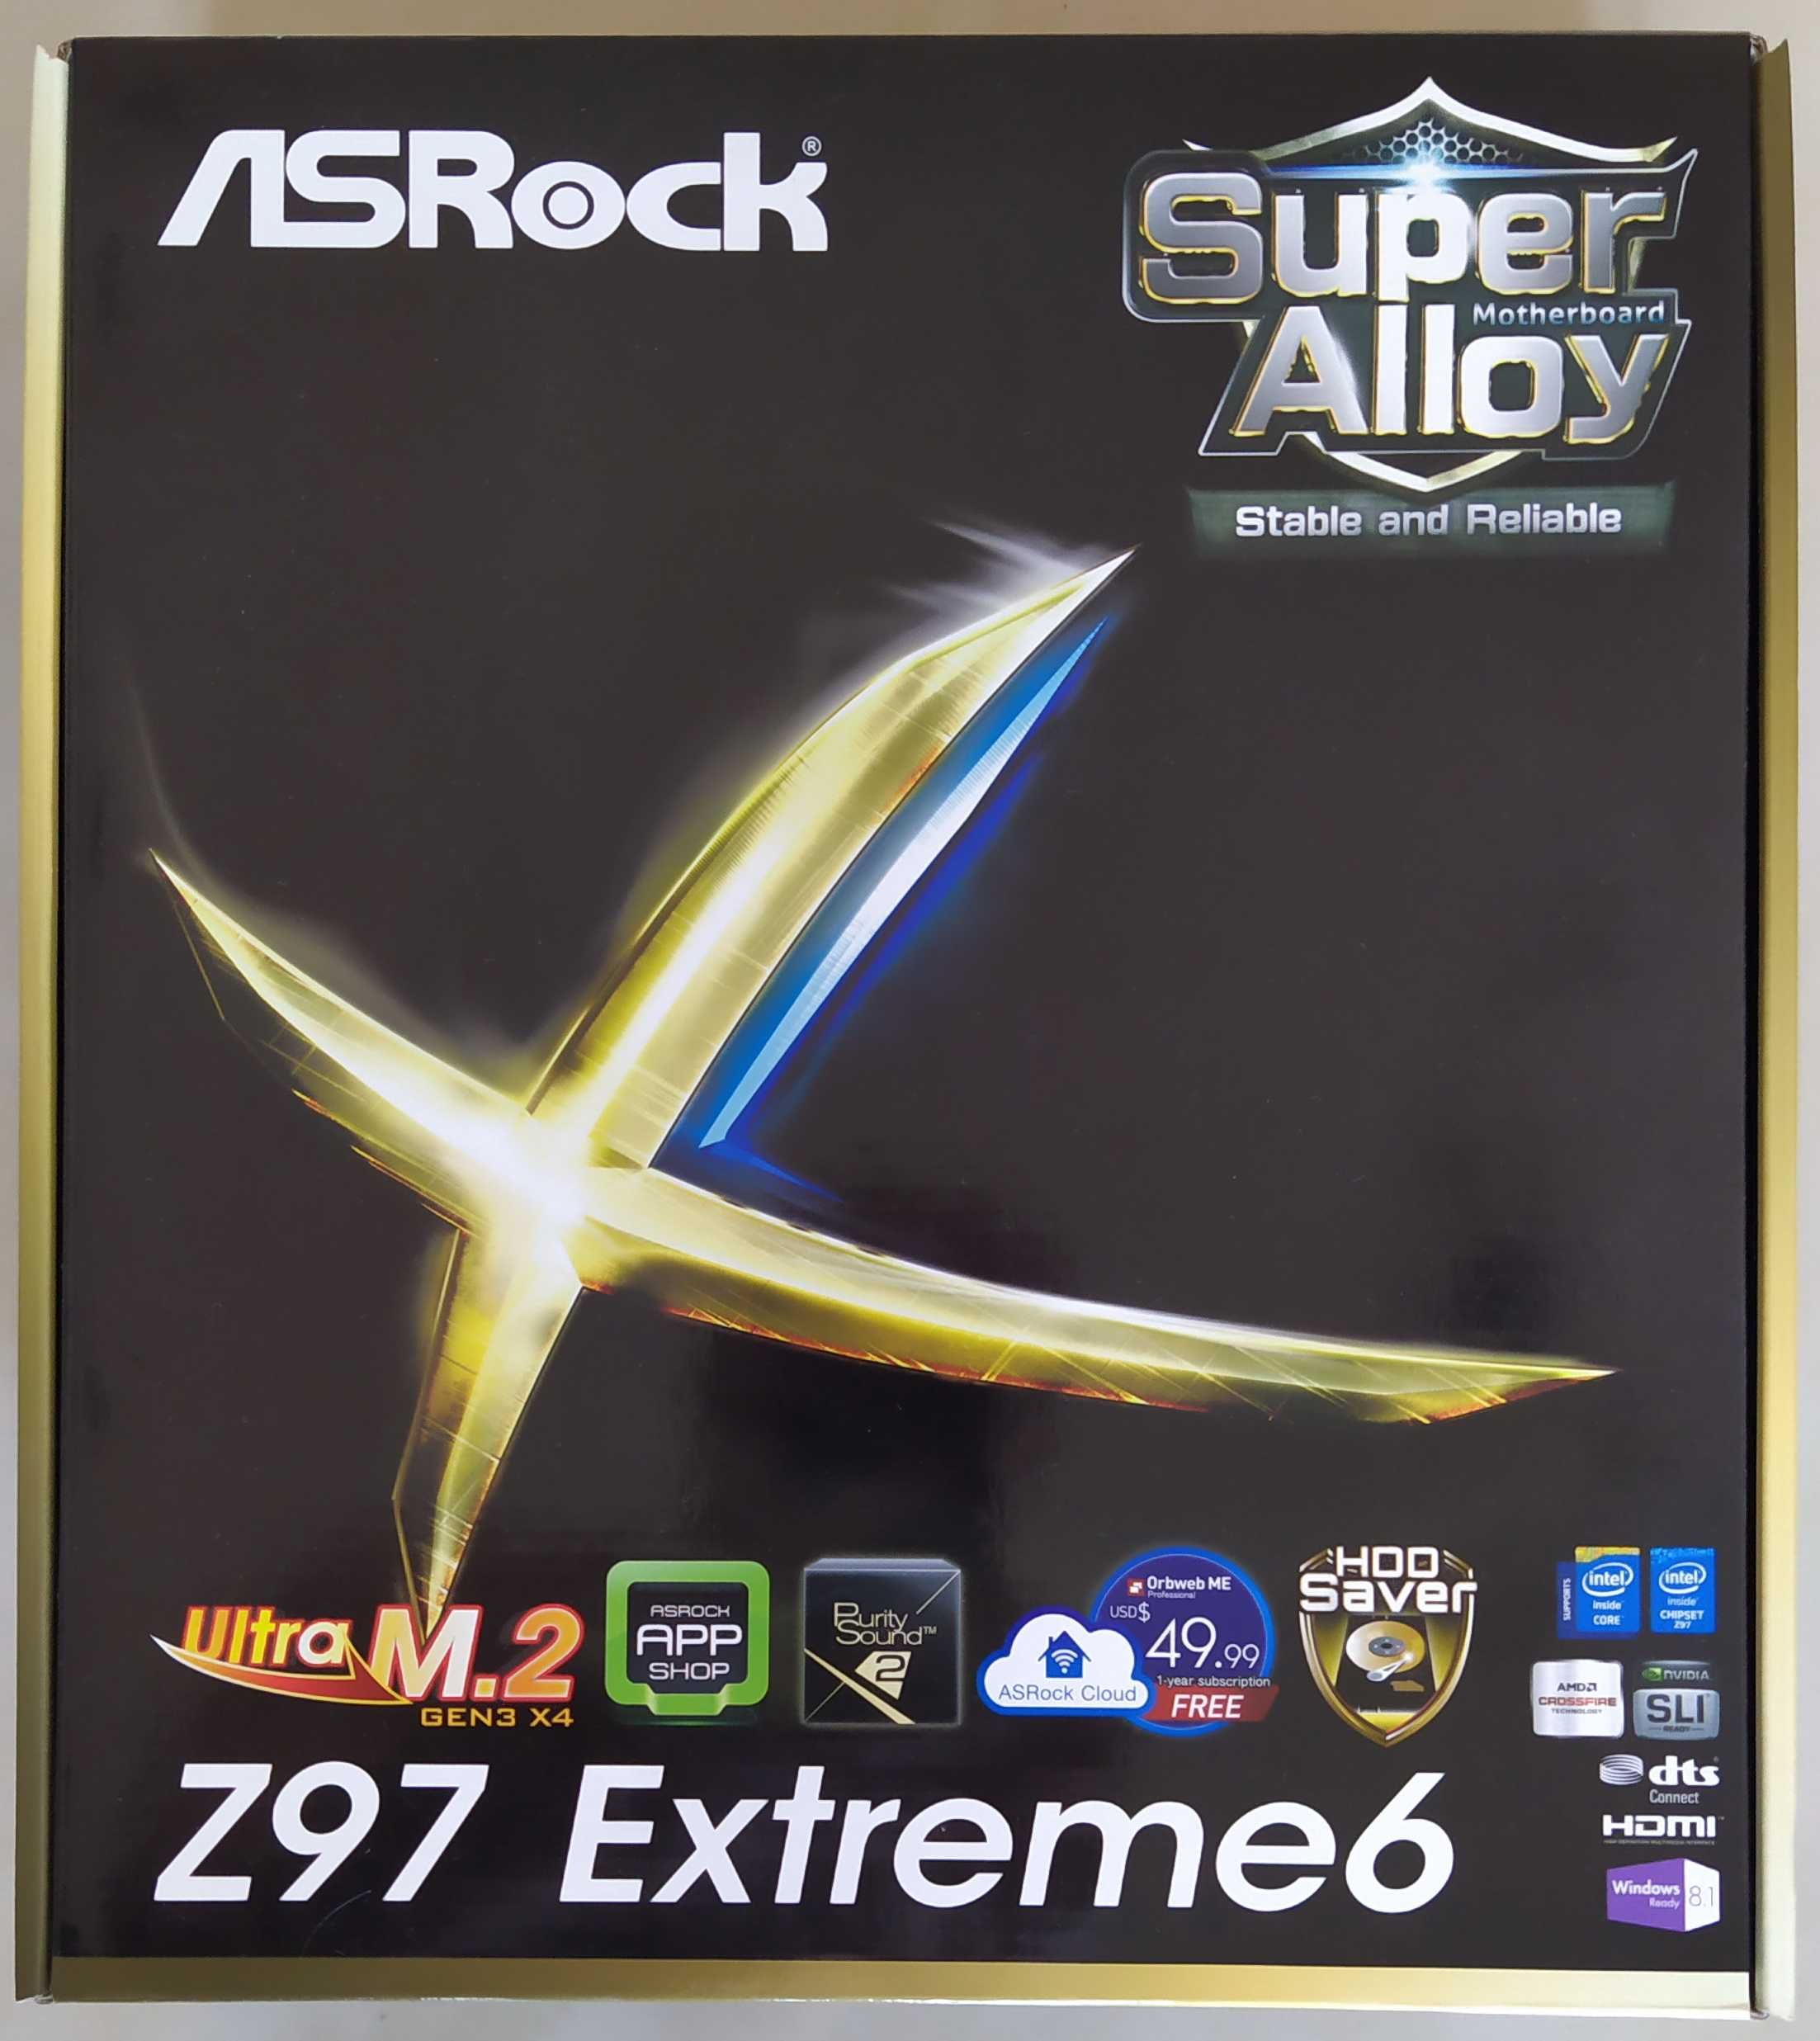 ASRock Z97 Extreme6 + i7-4790K 4.4Ghz + 16GB RAM 2400Mhz + Cooler